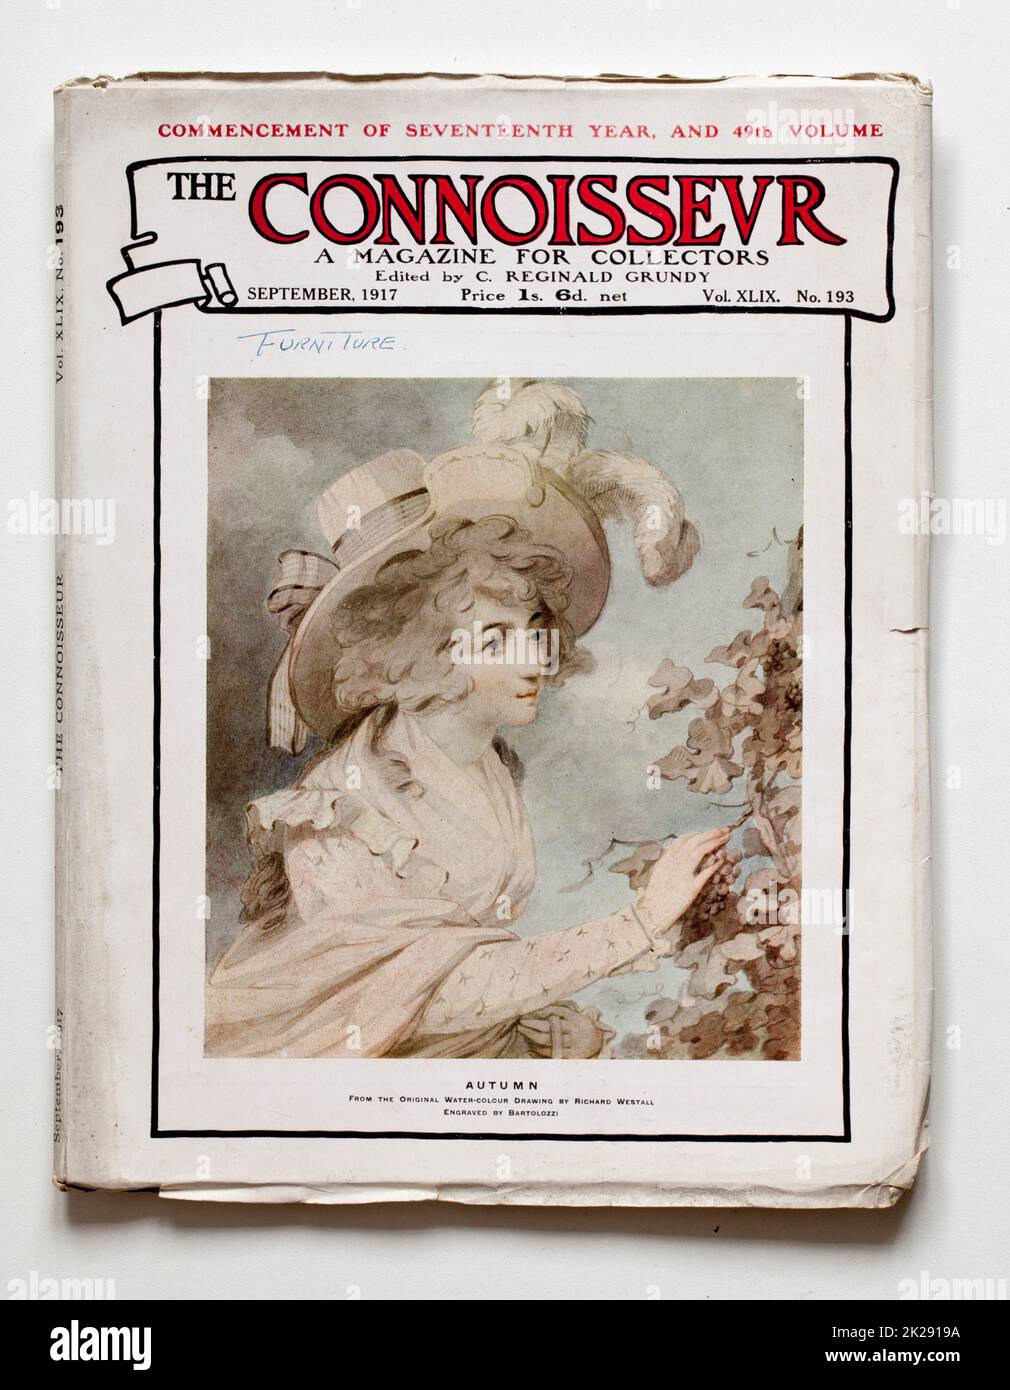 Numéro 1917 du Connoisseur Magazine - peinture d'automne sur la couverture Banque D'Images